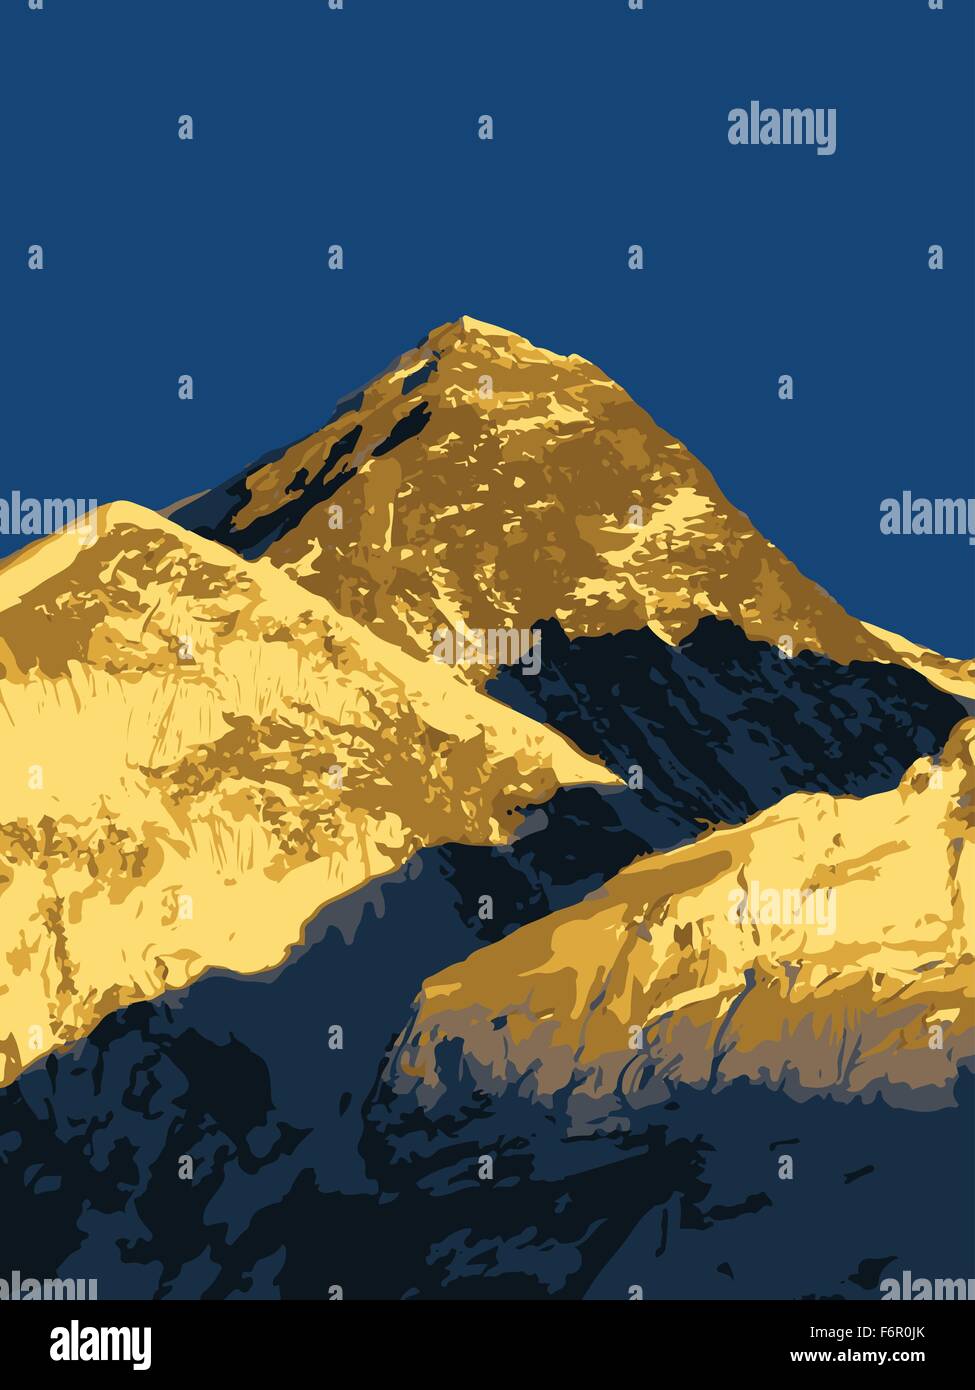 Le mont Everest, vecteur plus haute montagne du monde, dans l'Himalaya, Népal Illustration de Vecteur